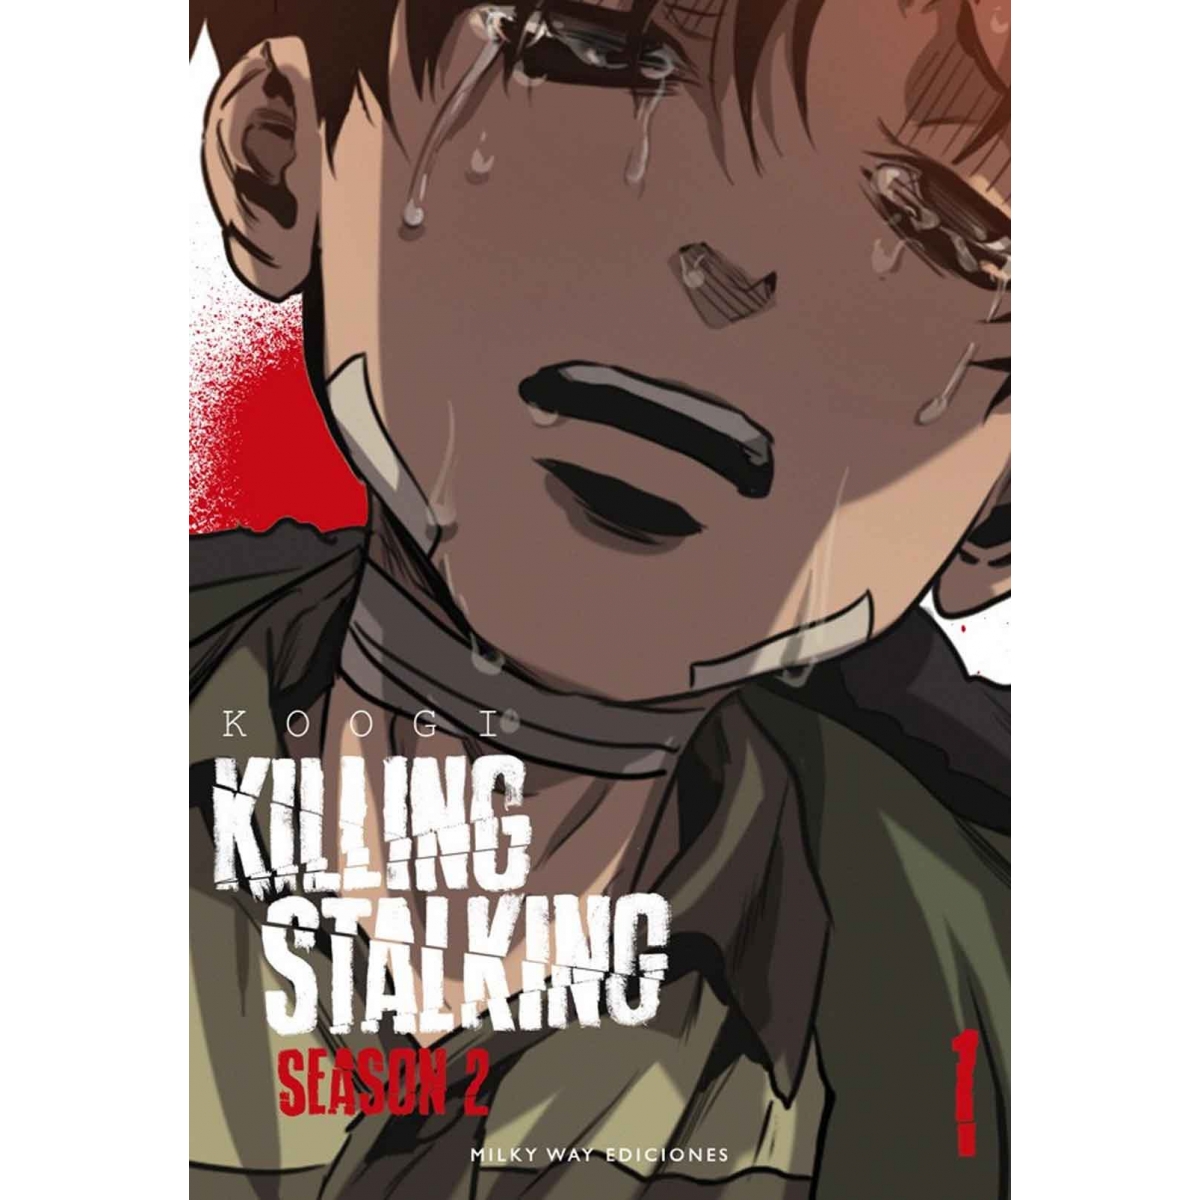 Killing Stalking Season 2...